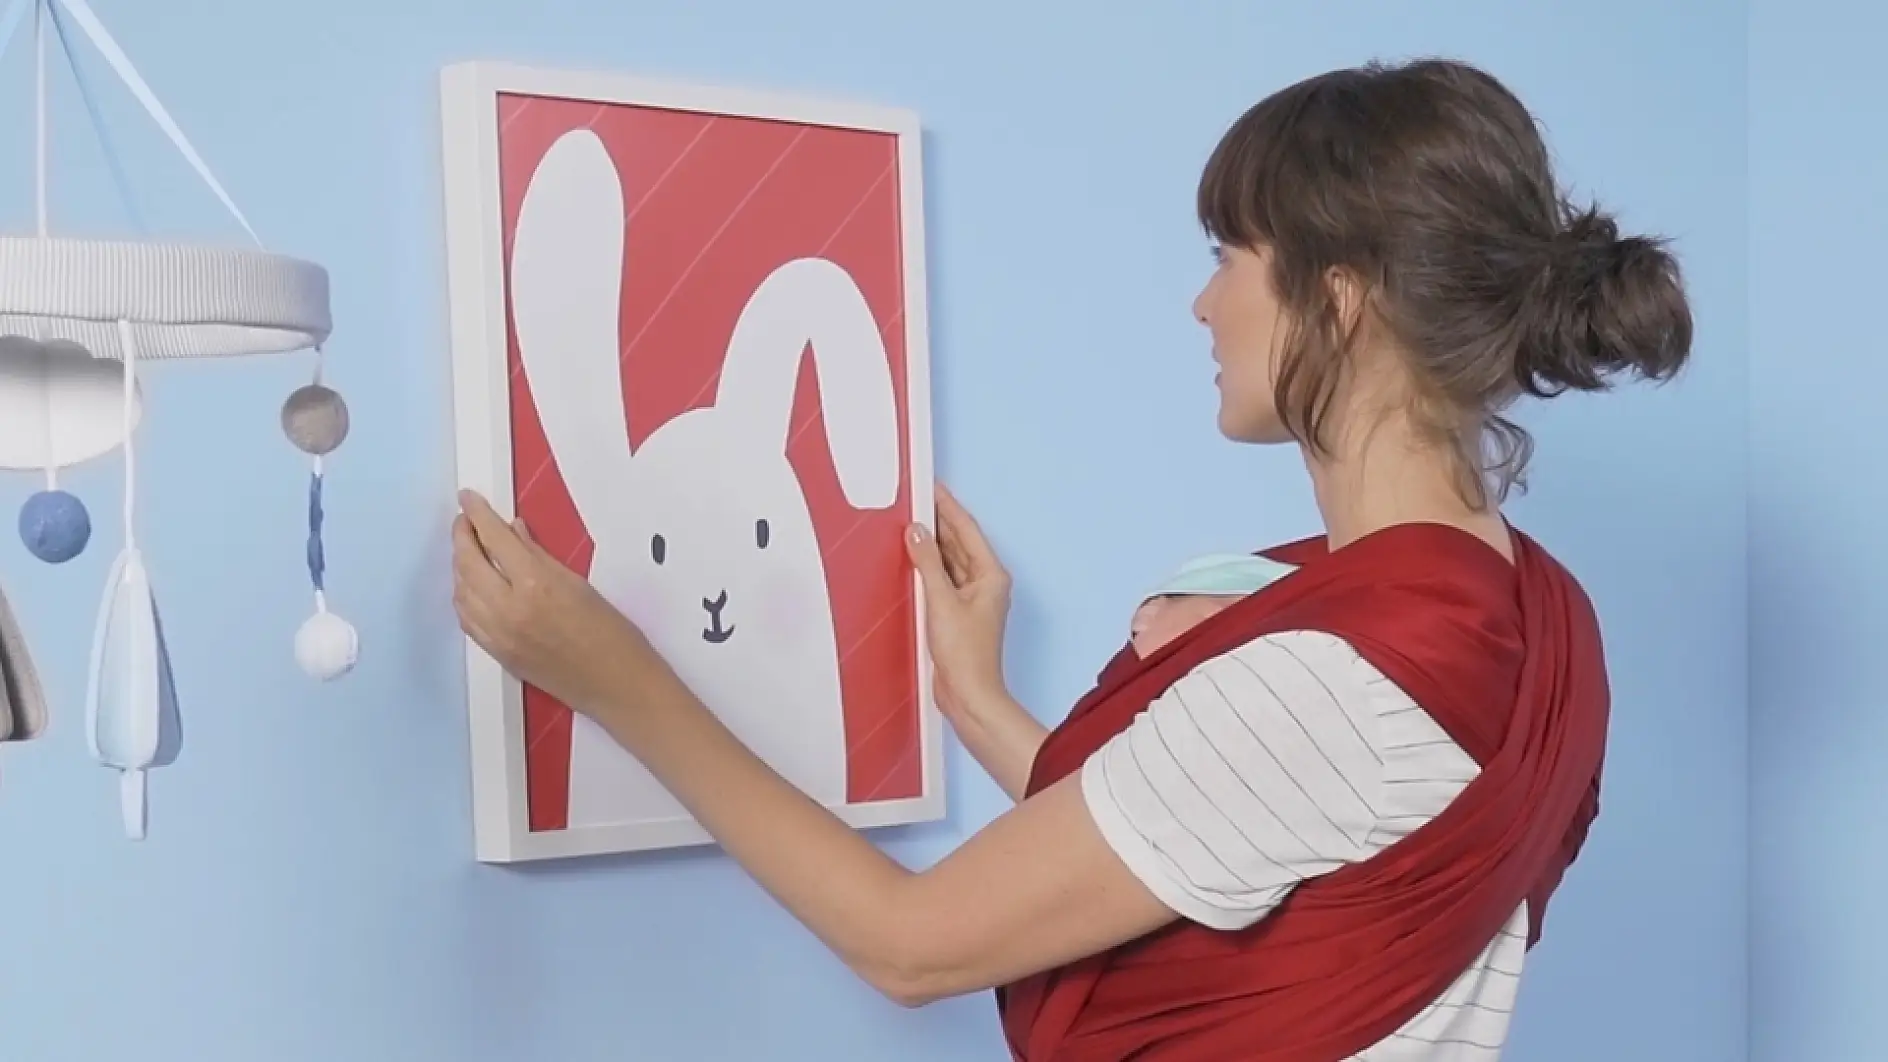 Uma mulher está a pendurar uma moldura com uma ilustração infantil.